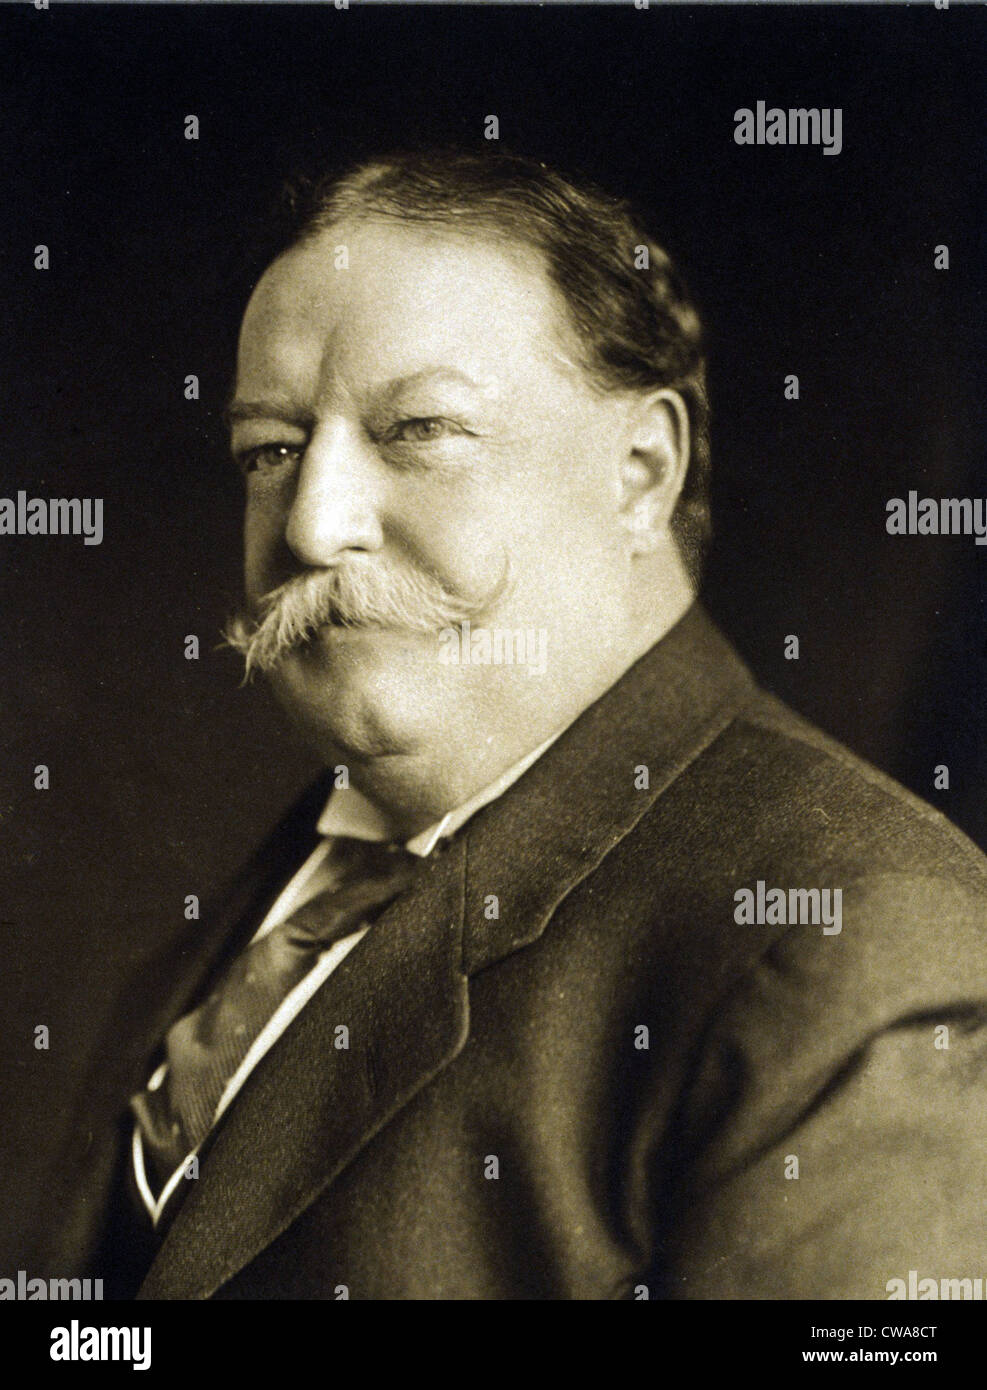 Le président William Taft (1857-1930) dans un portrait réalisé le 11 mars 1909, juste après son investiture à la présidence des États-Unis. Banque D'Images